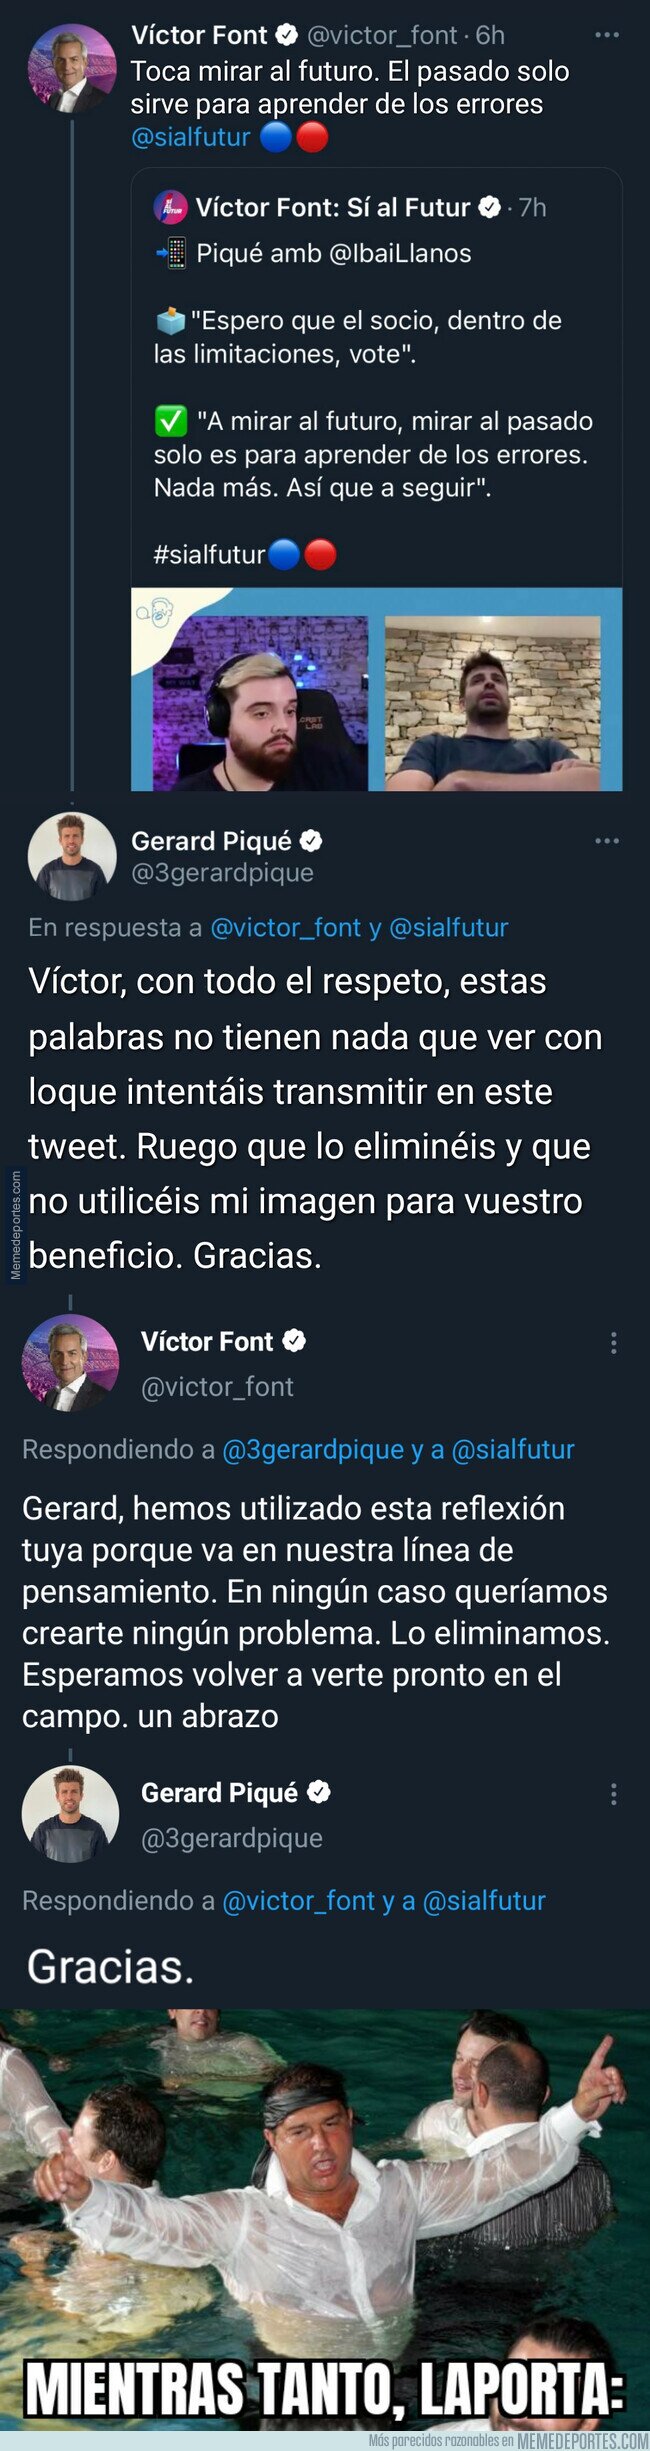 1127092 - El cruce de tuits entre Piqué y Víctor Font que podrían hacerle perder las elecciones definitivamente